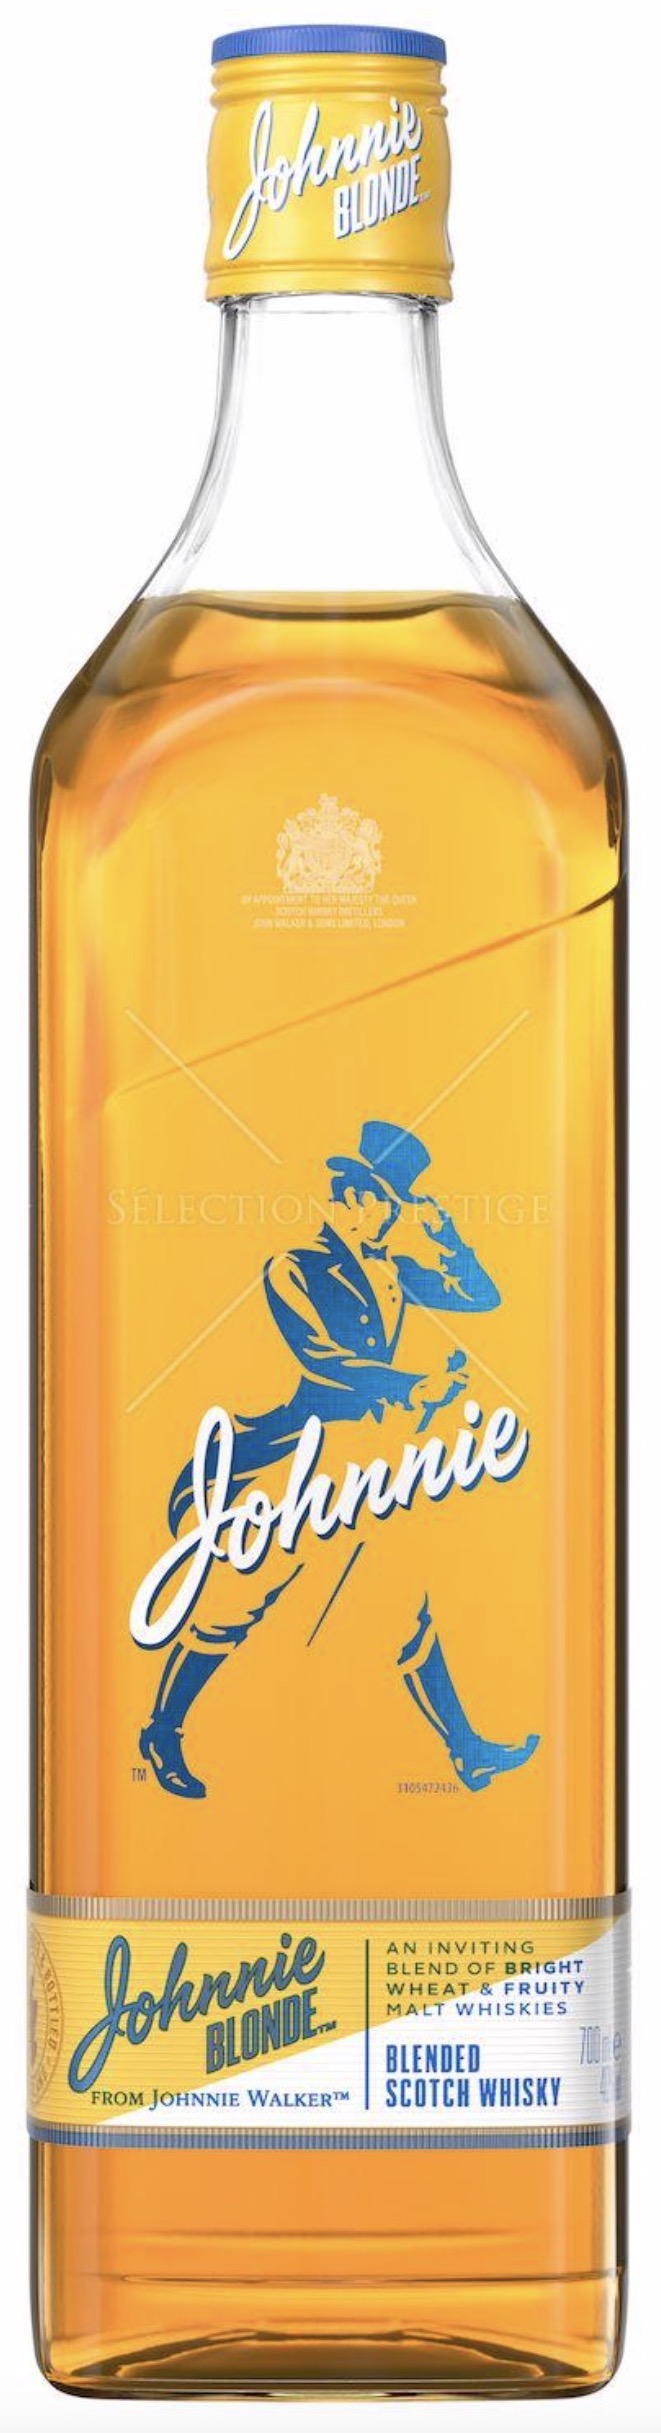 Johnnie Walker Blonde Blended Scotch Whisky 40% vol. 0,7L